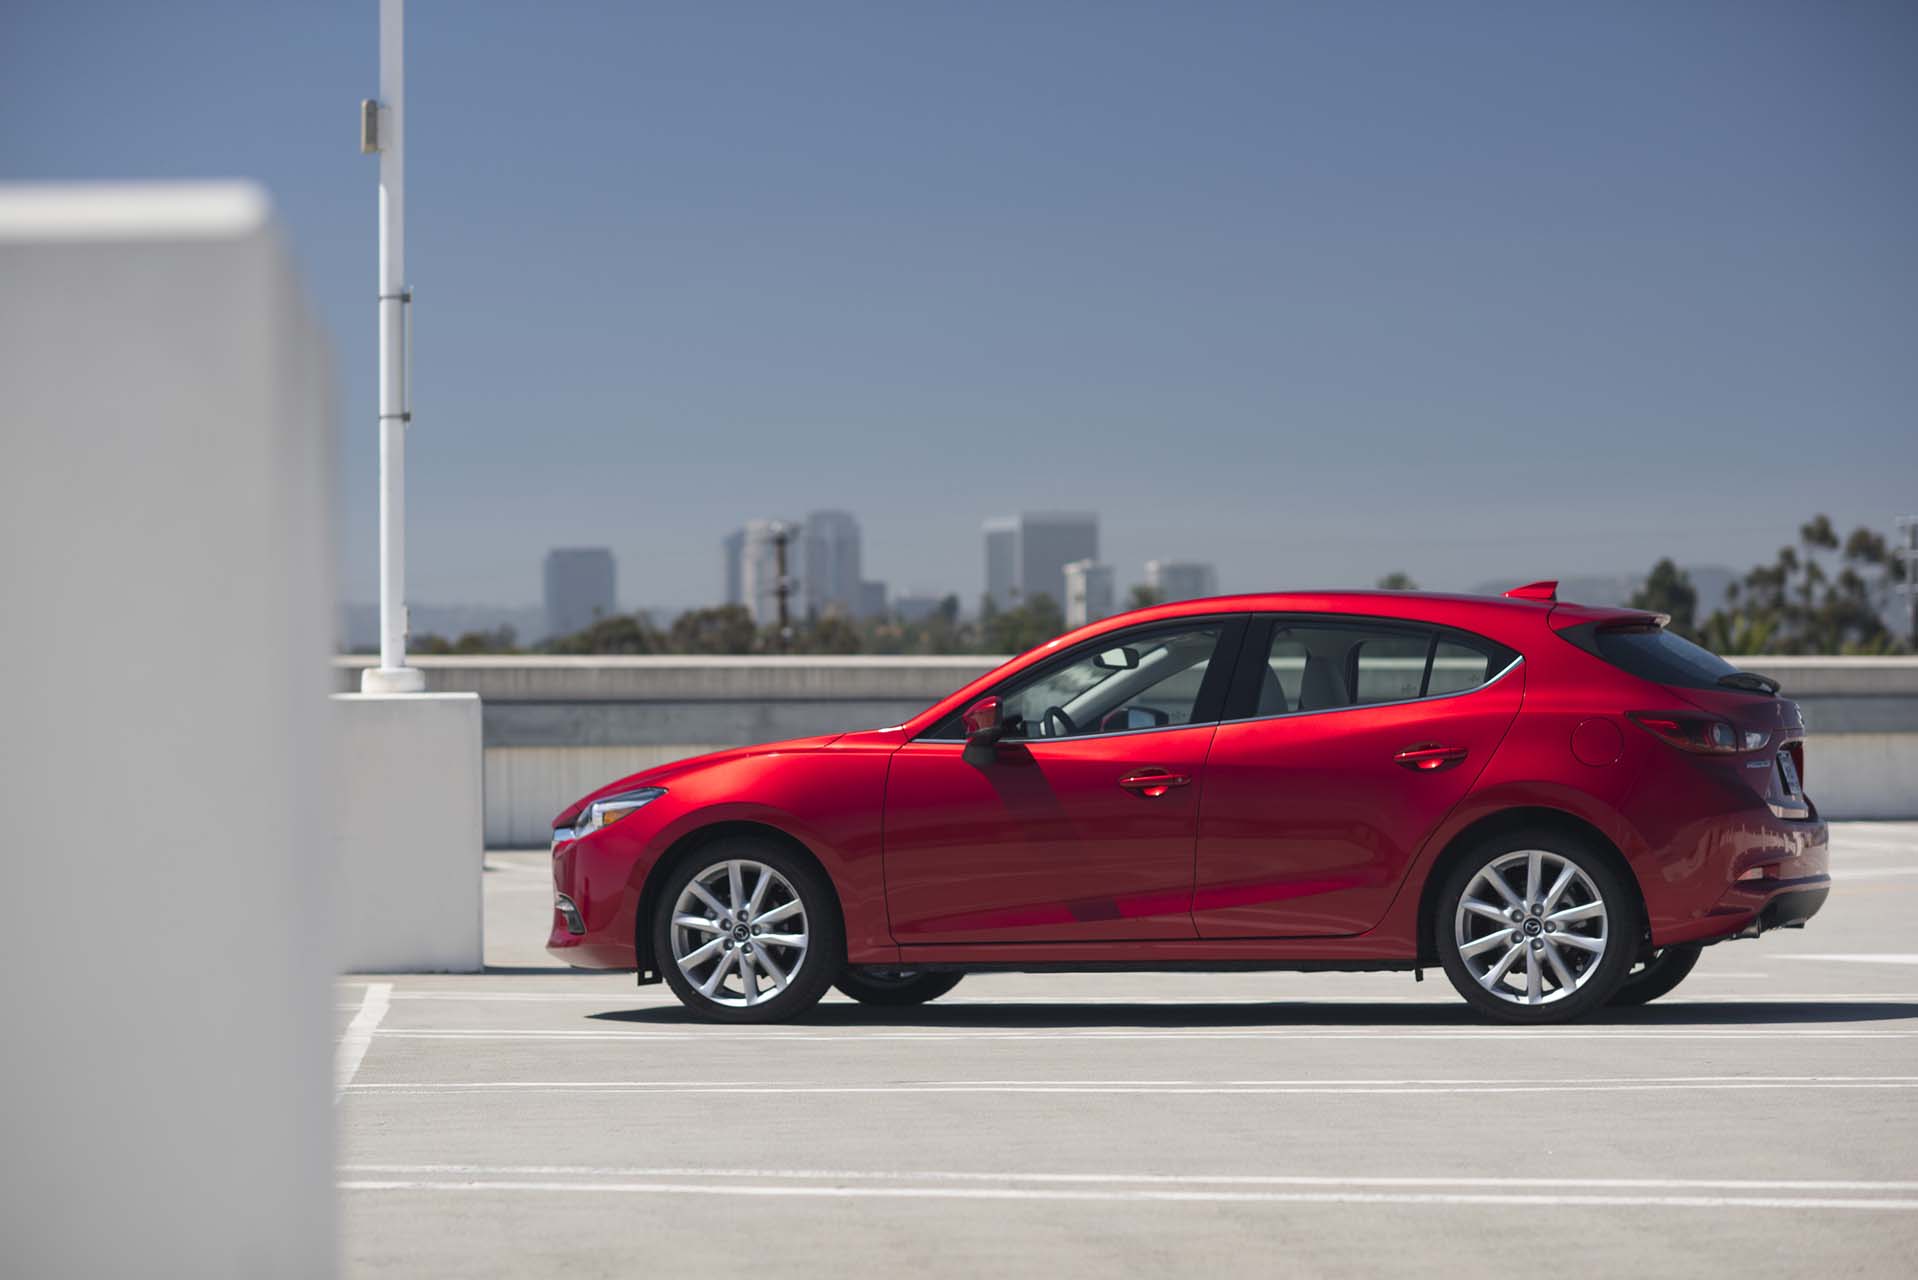 Đánh giá sơ bộ xe Mazda 3 2017